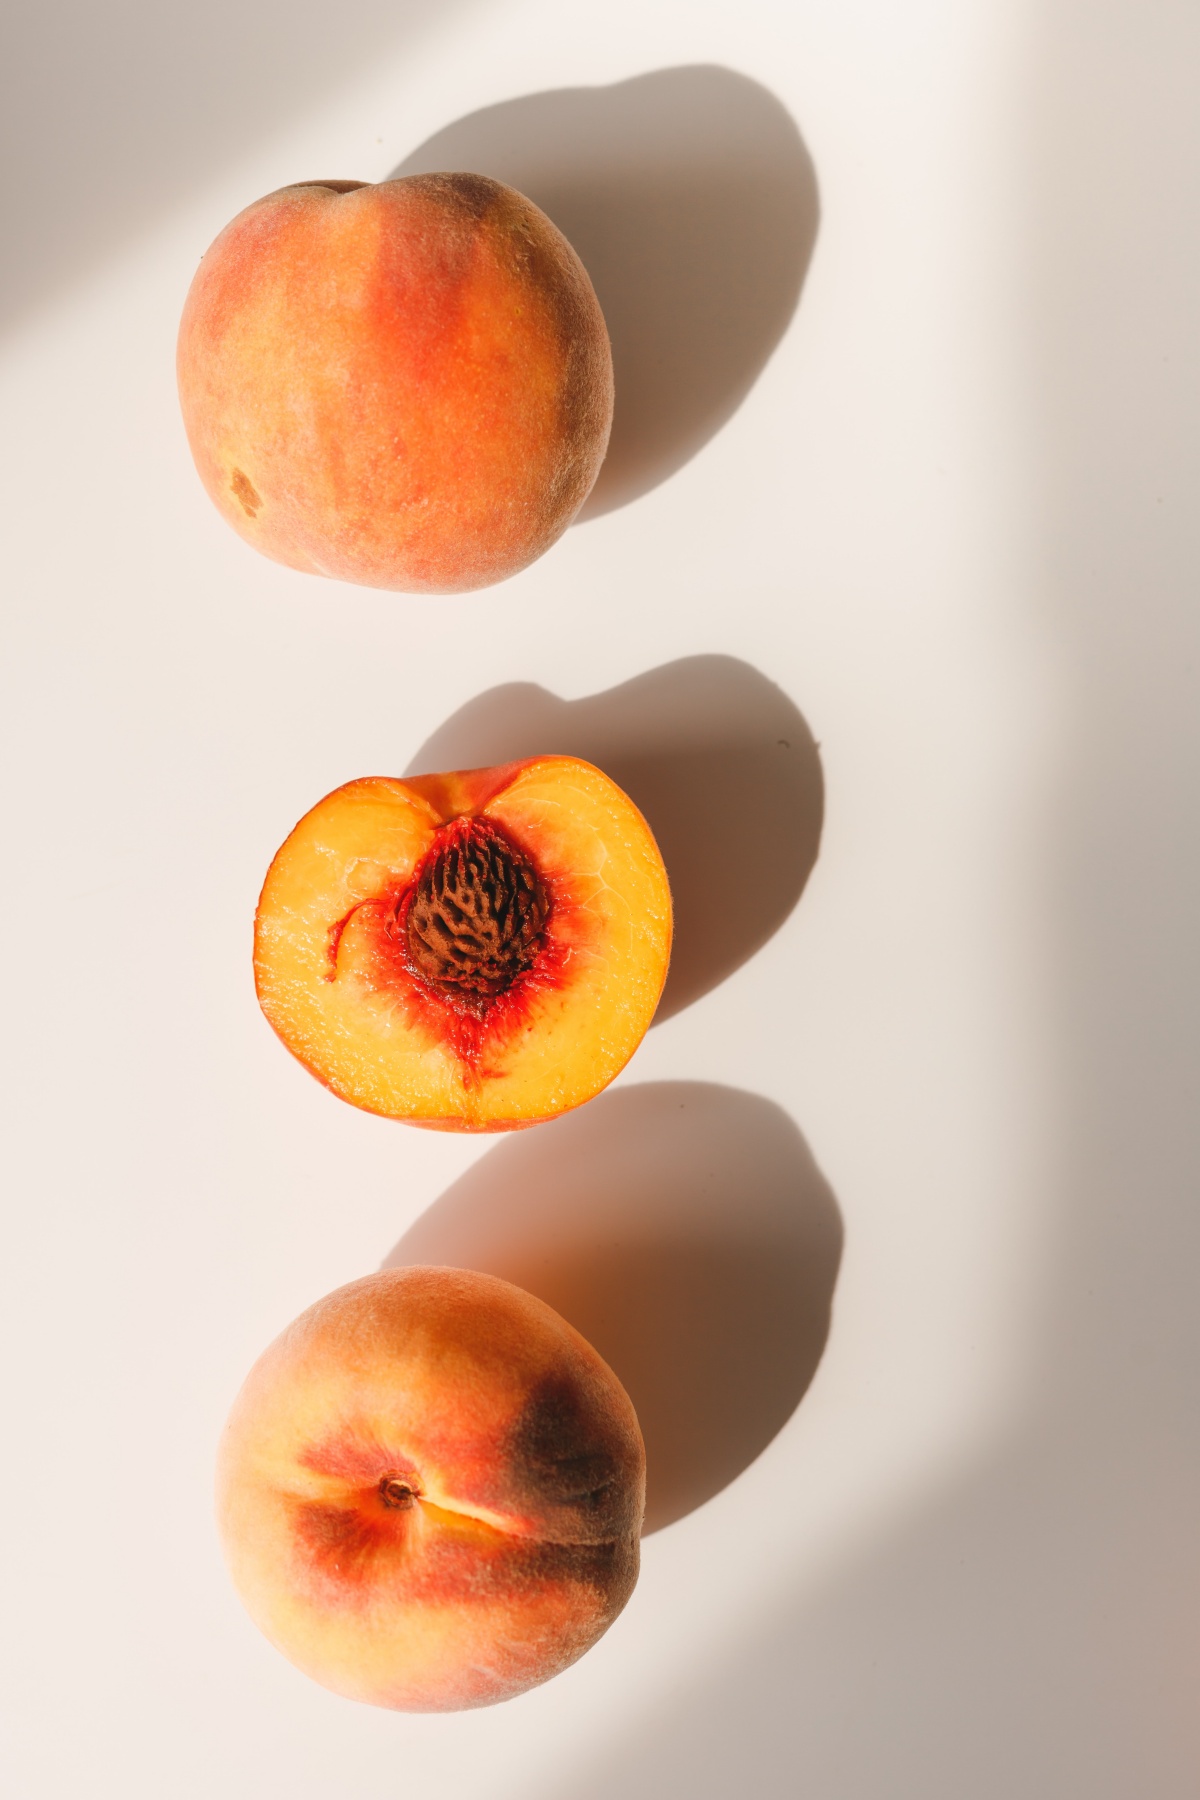 cit peach and whole peach